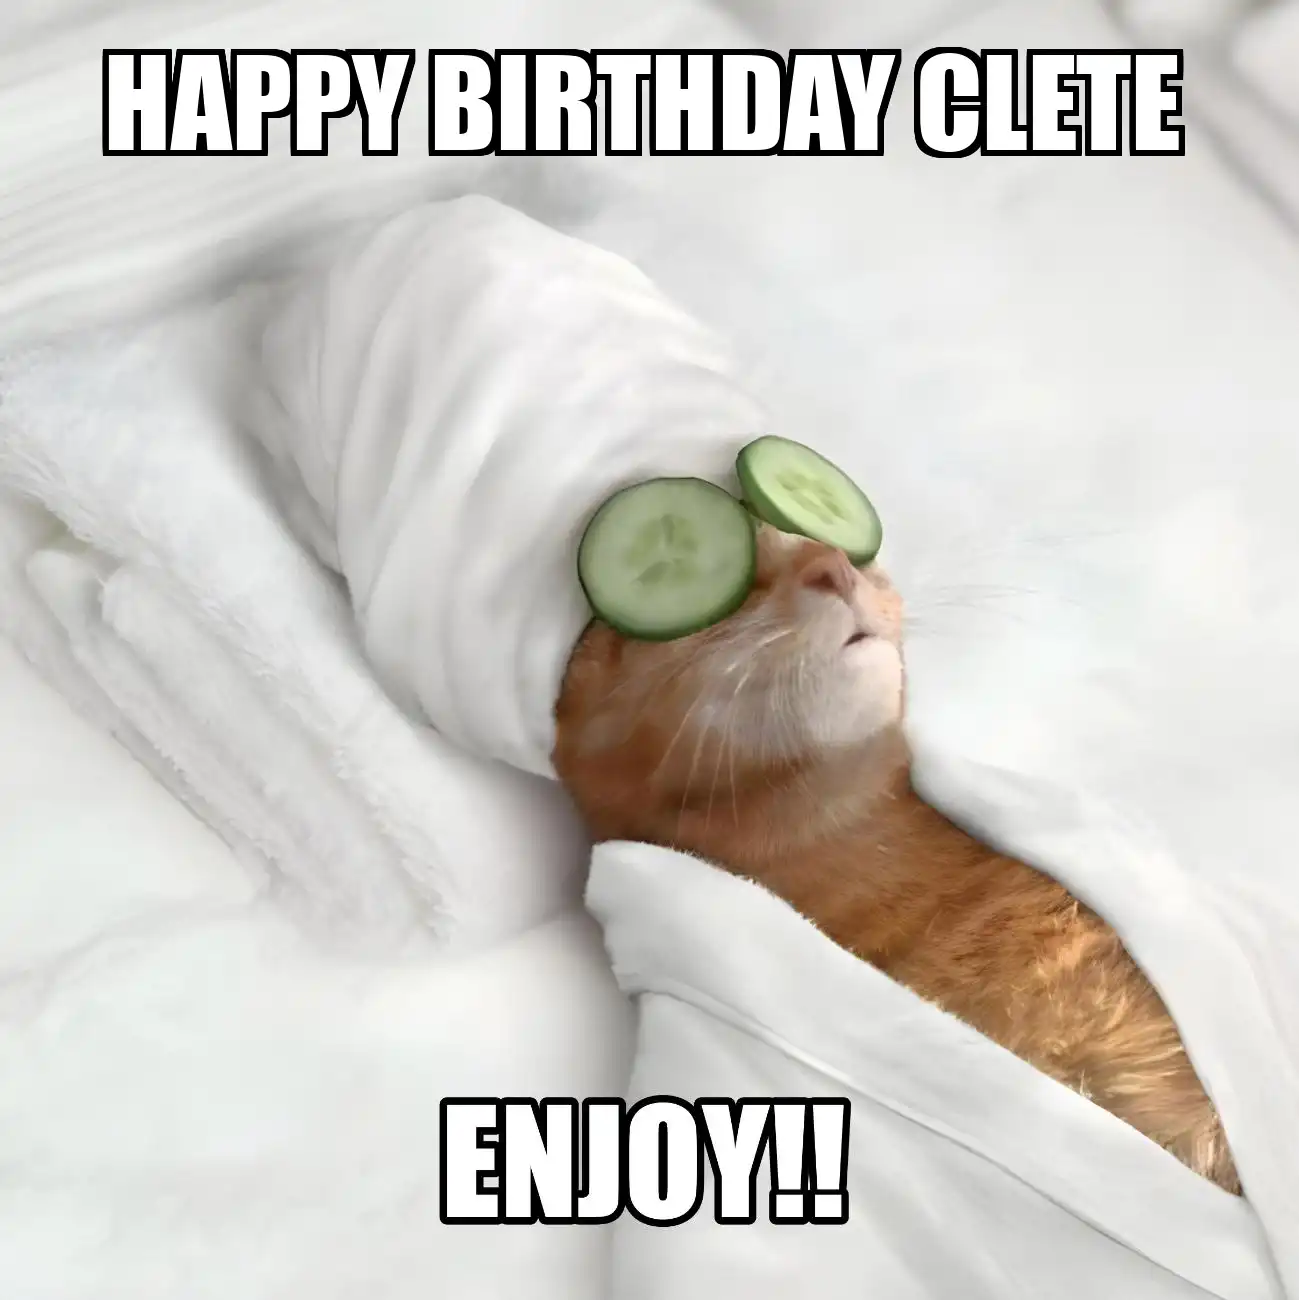 Happy Birthday Clete Enjoy Cat Meme